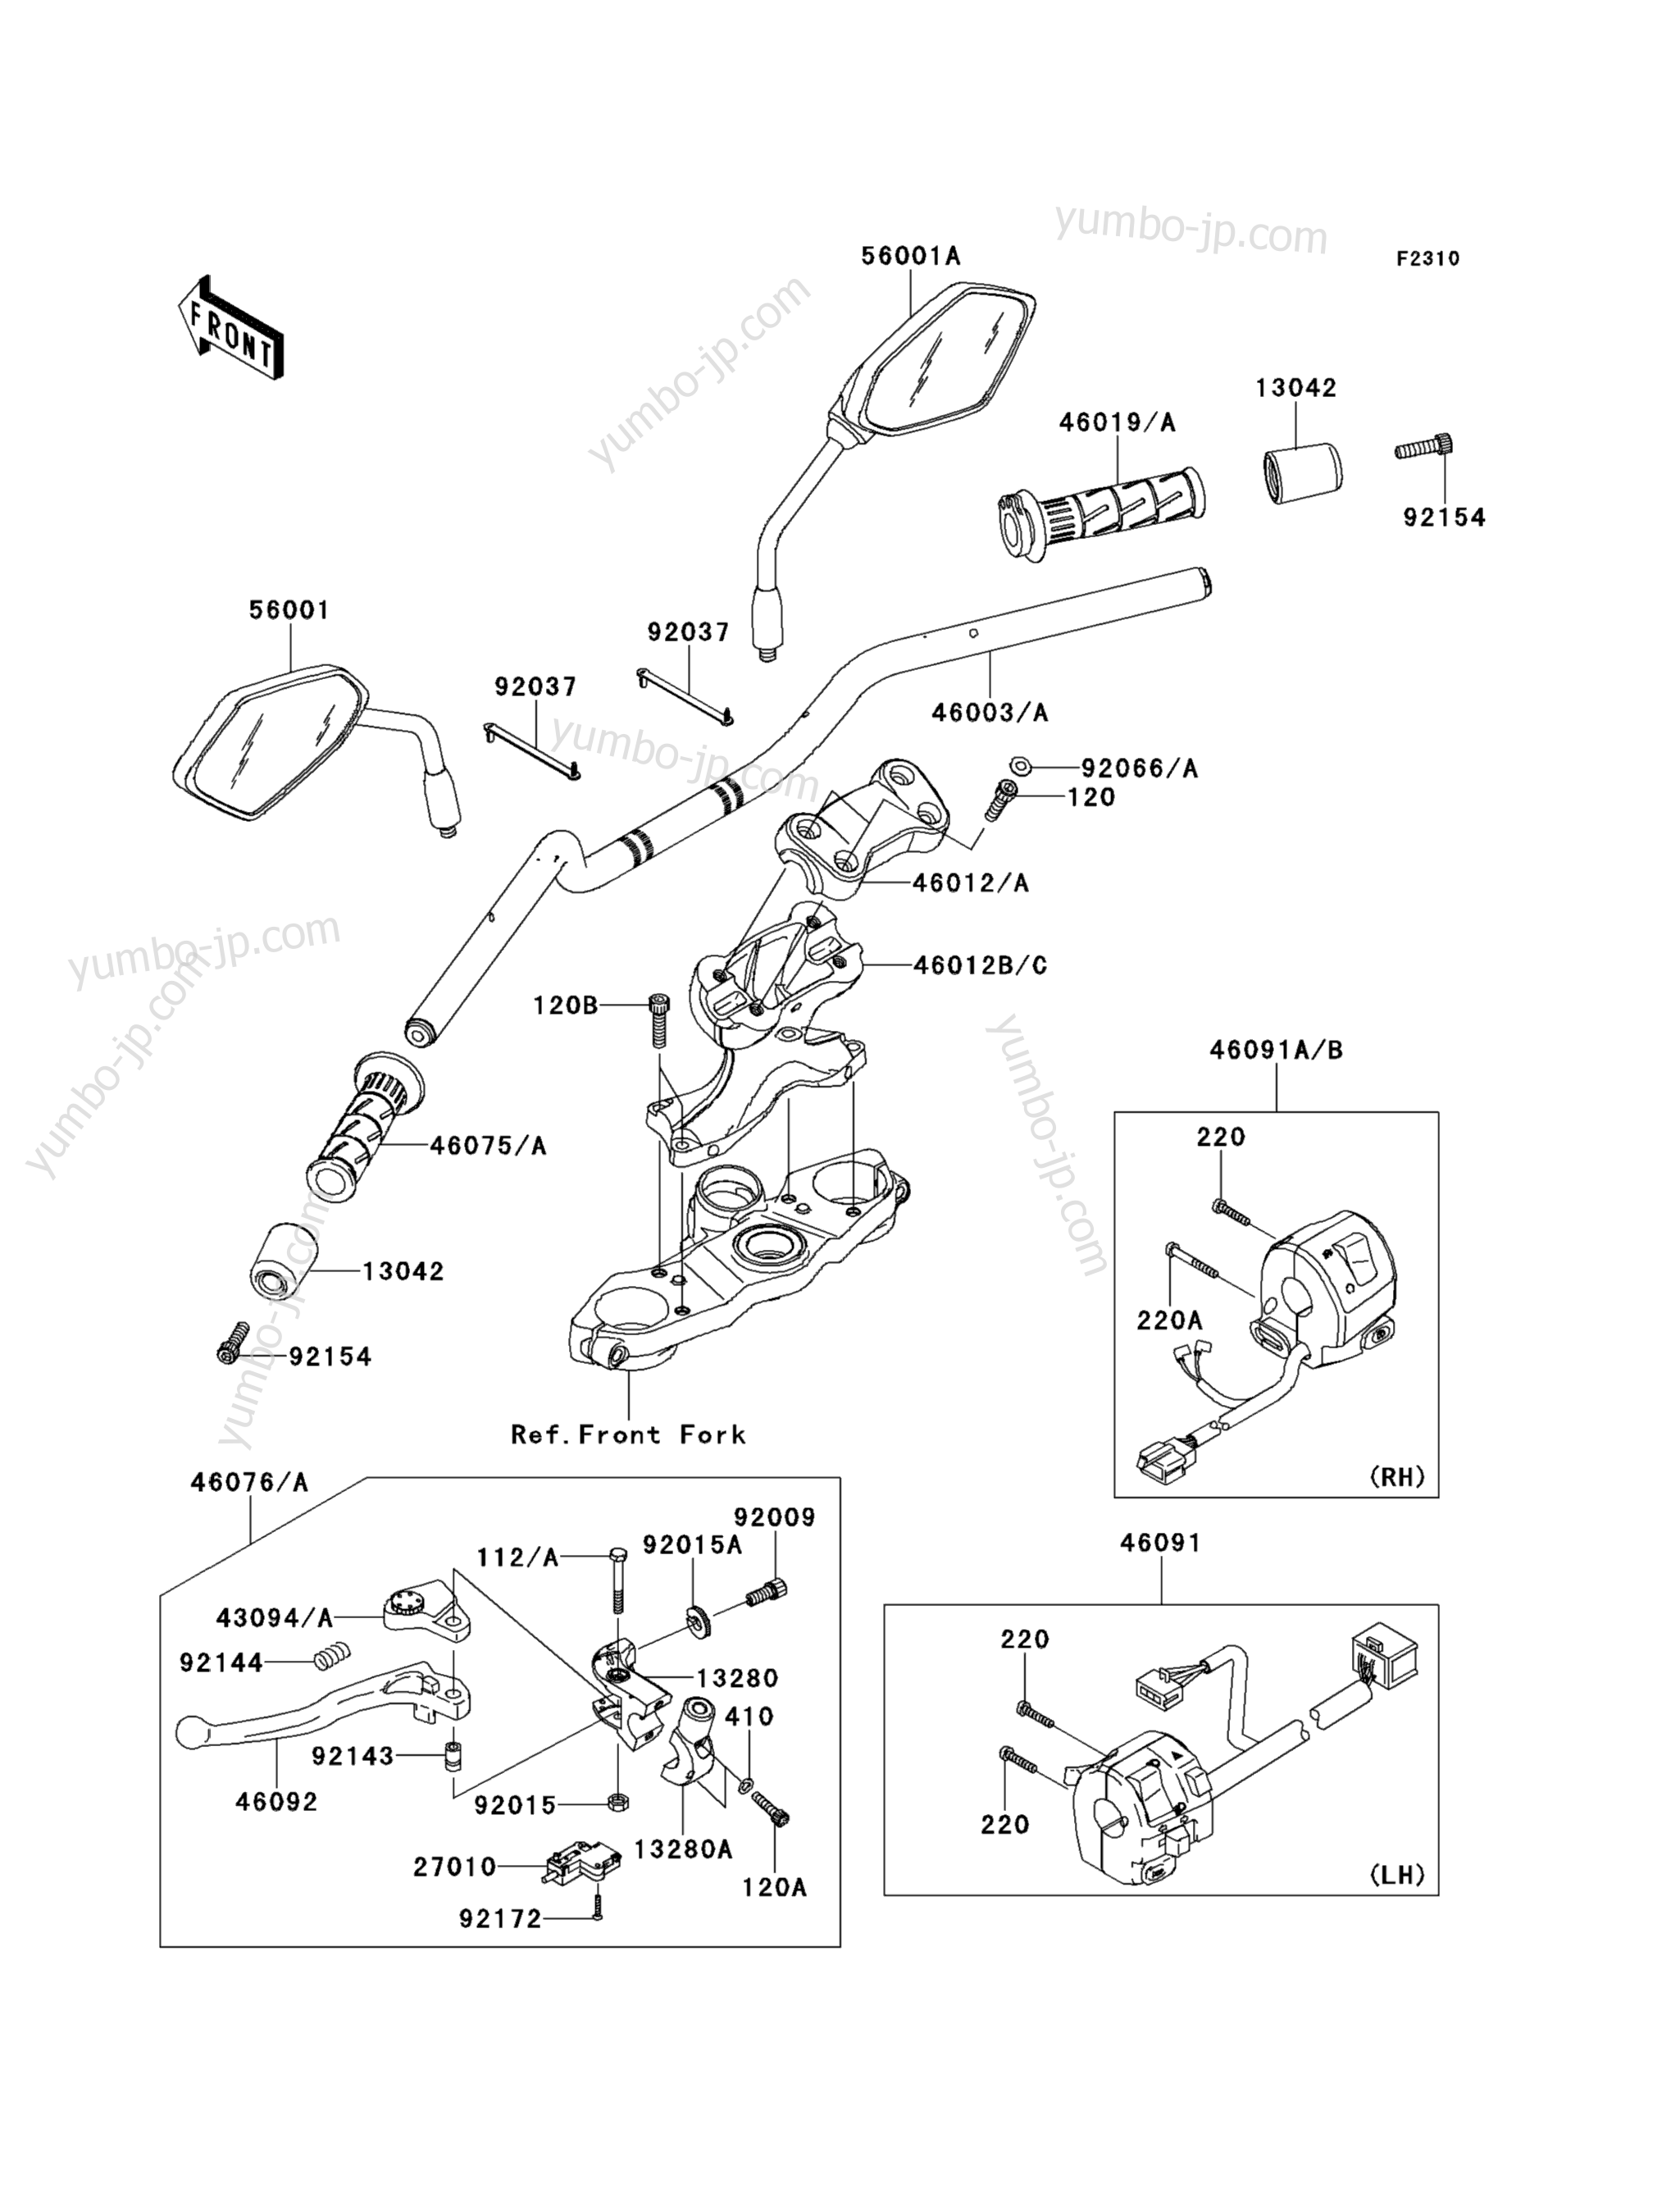 Румпель (рукоятка управления) для мотоциклов KAWASAKI VERSYS (KLE650CDF) 2013 г.